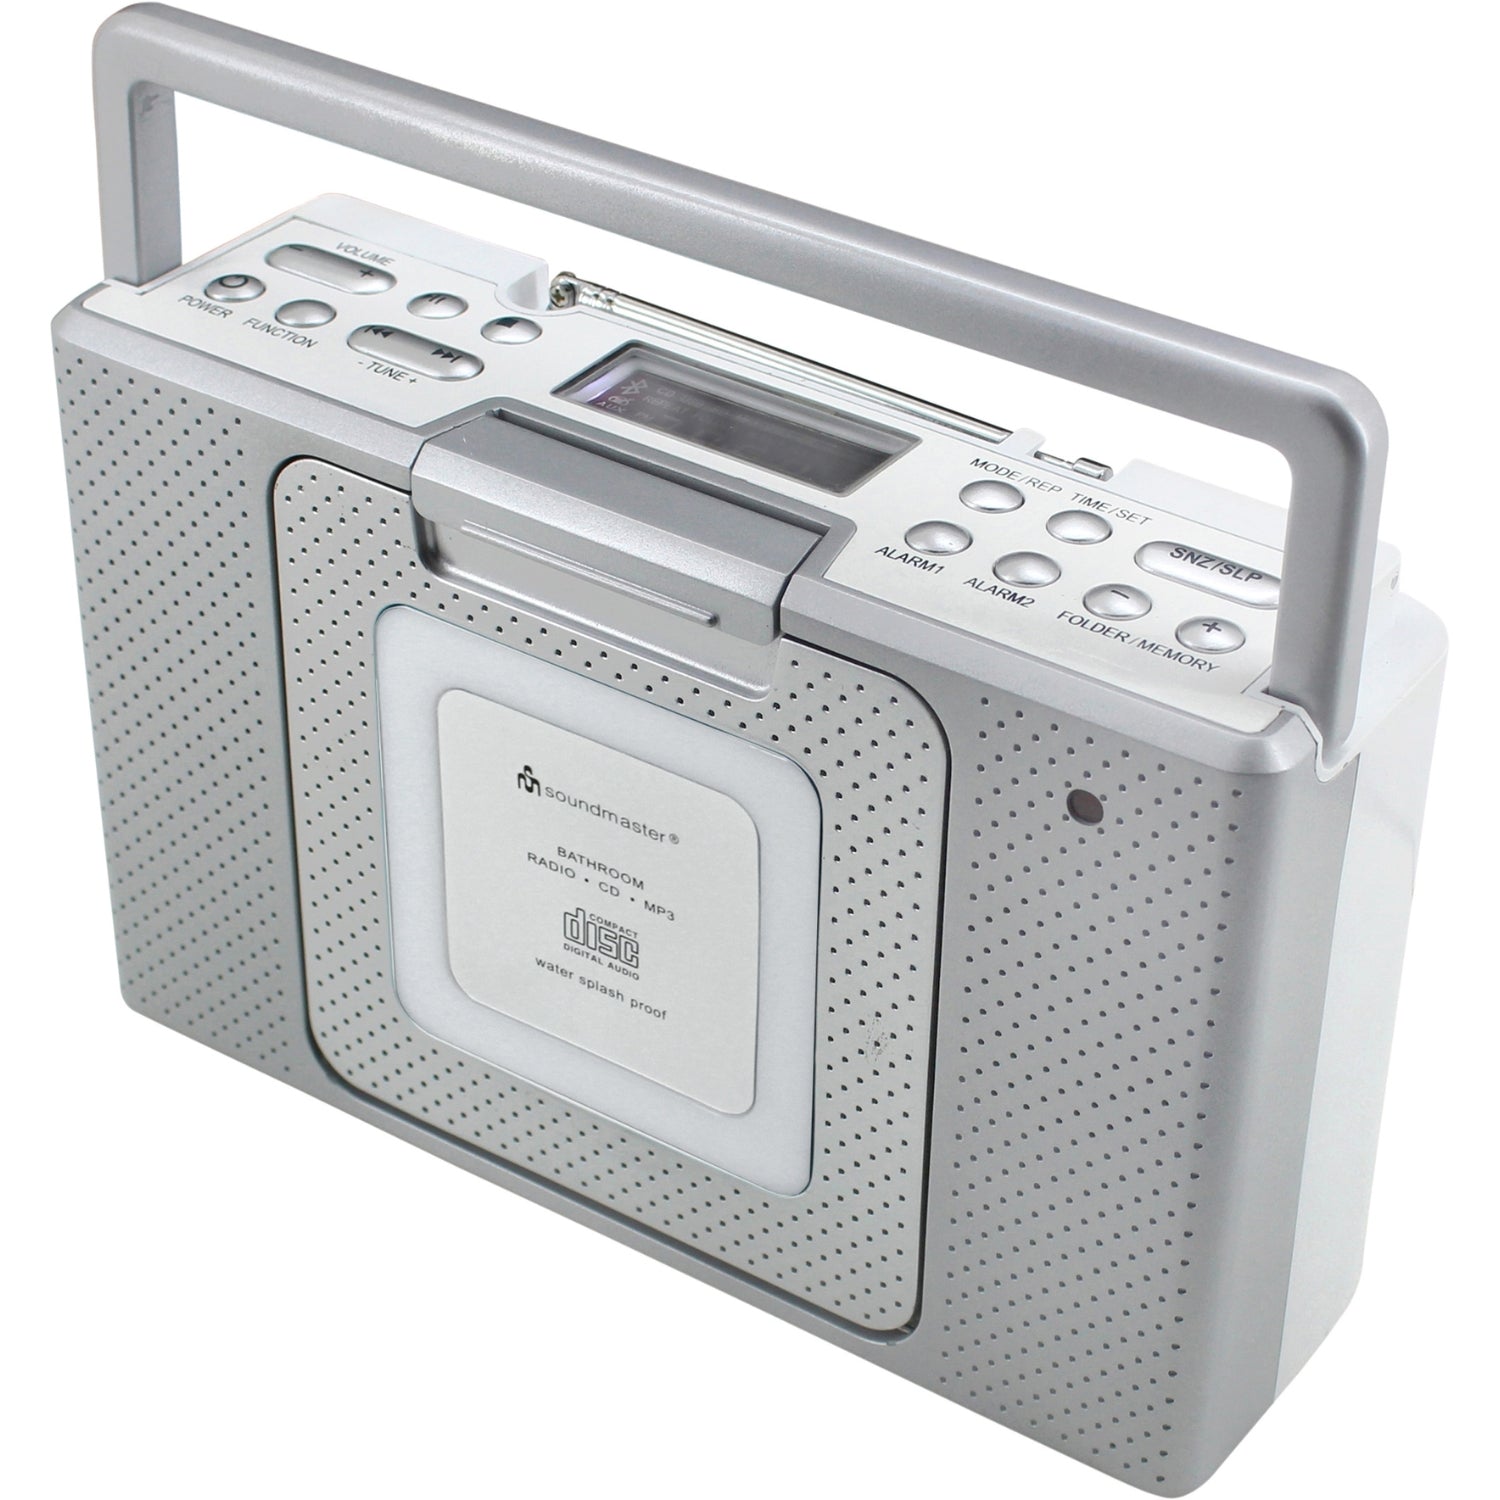 Soundmaster BCD480 radio de salle de bain radio de cuisine lecteur CD horloge IPX4 résistant aux éclaboussures